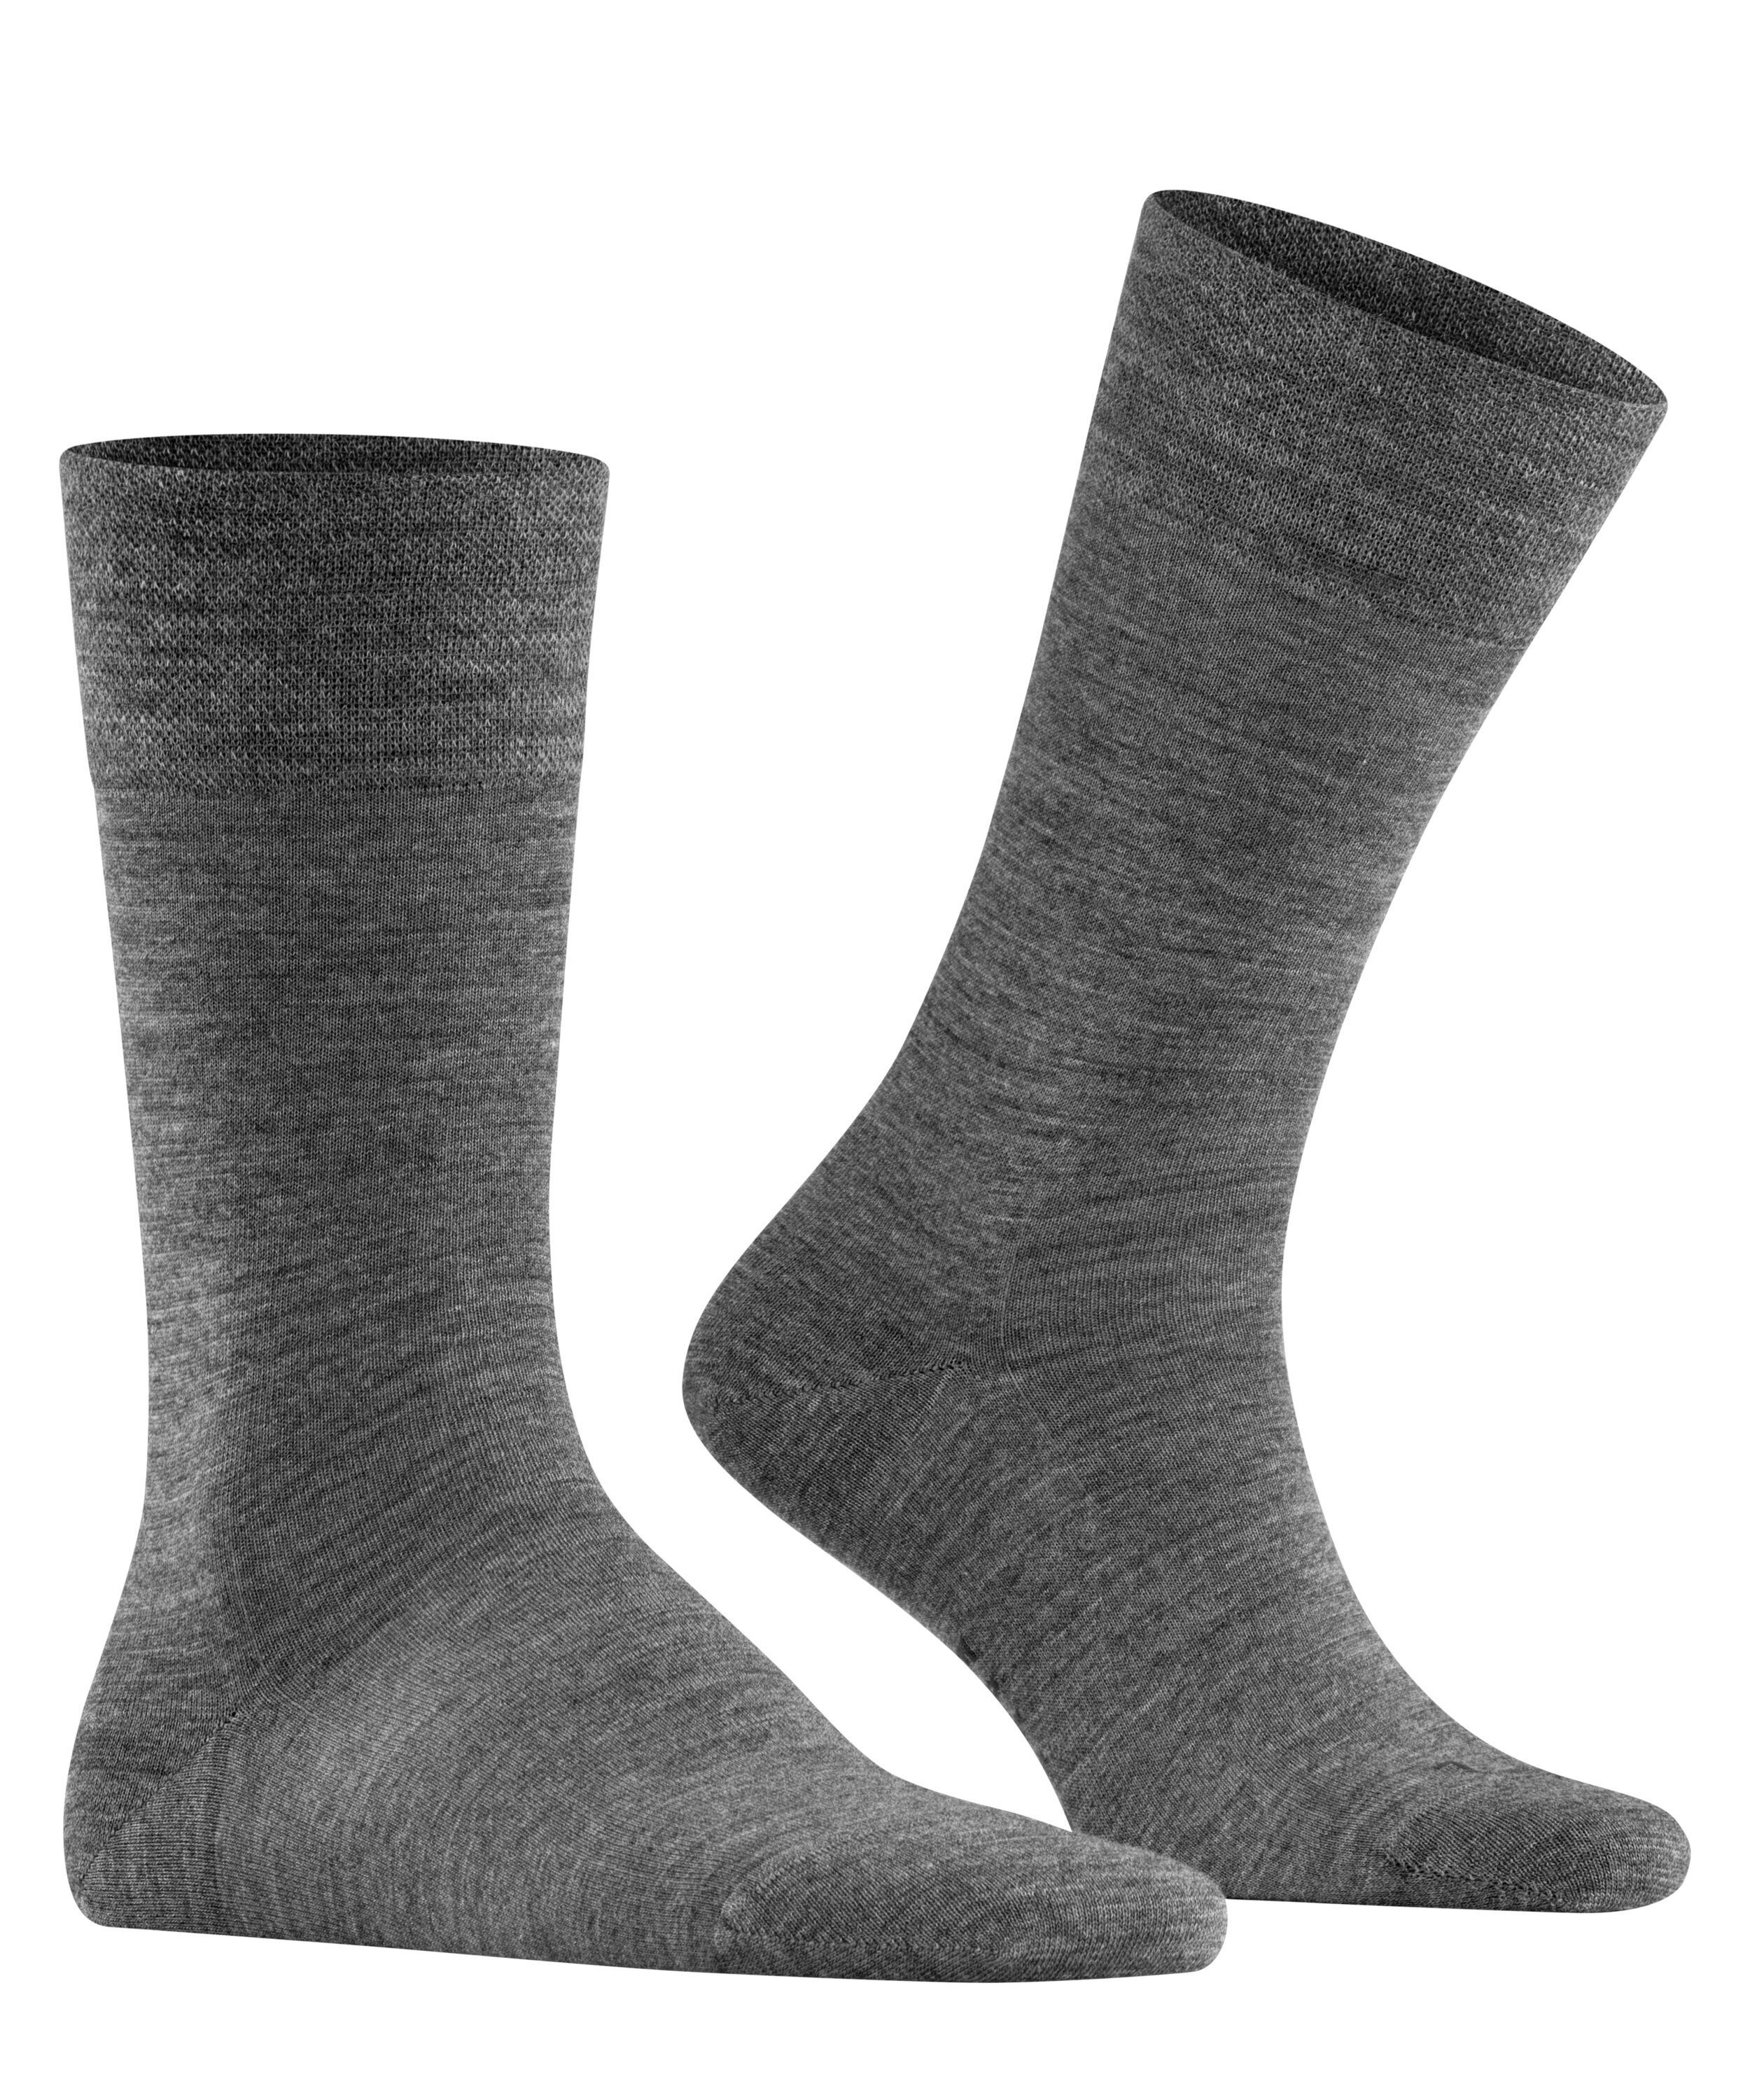 FALKE Socken dark grey